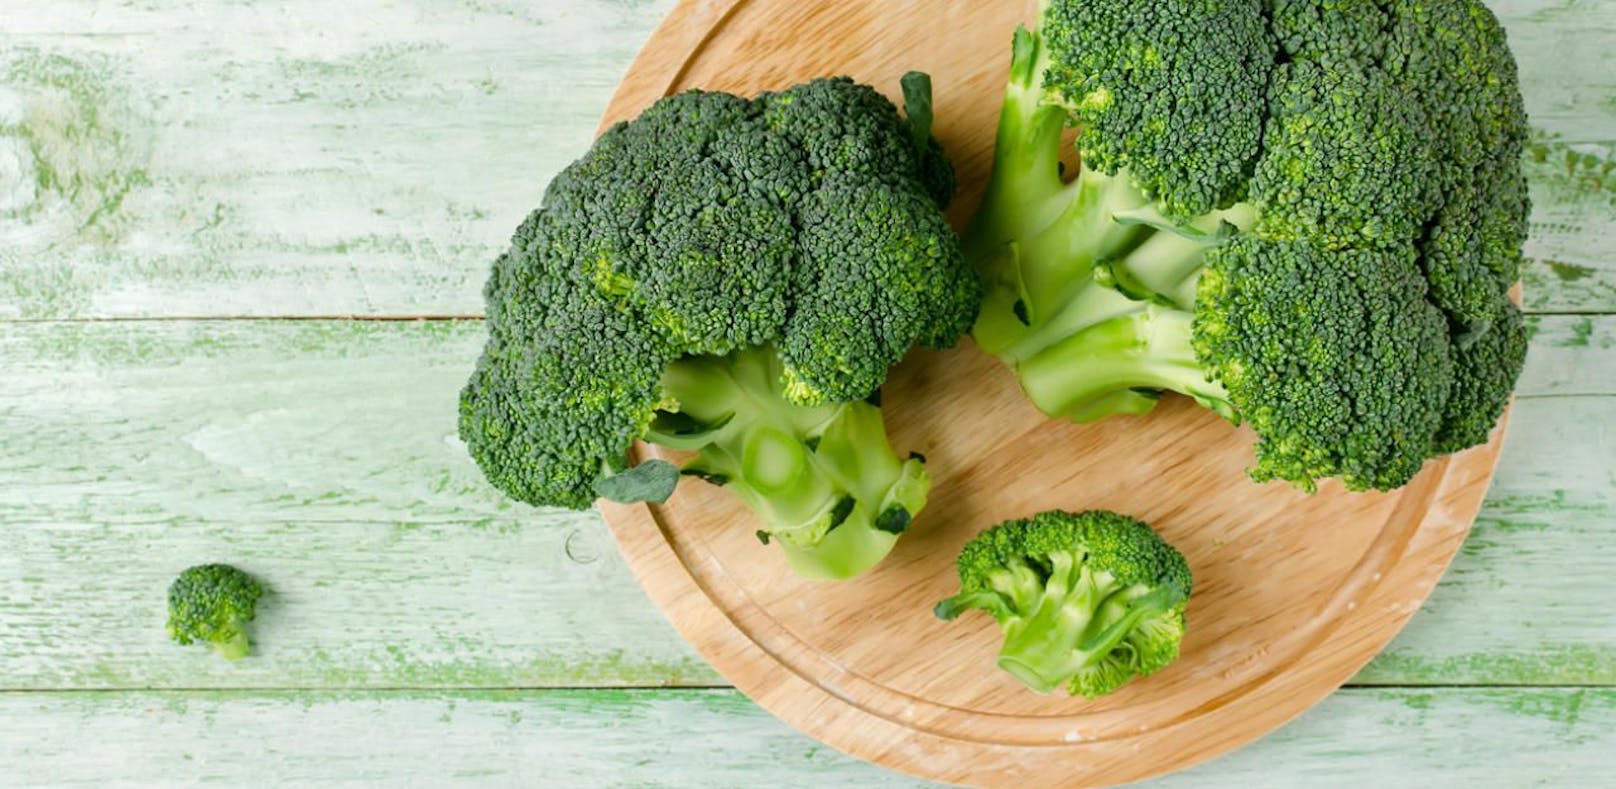 Brokkoli zum Abnehmen - so hilft er wirklich